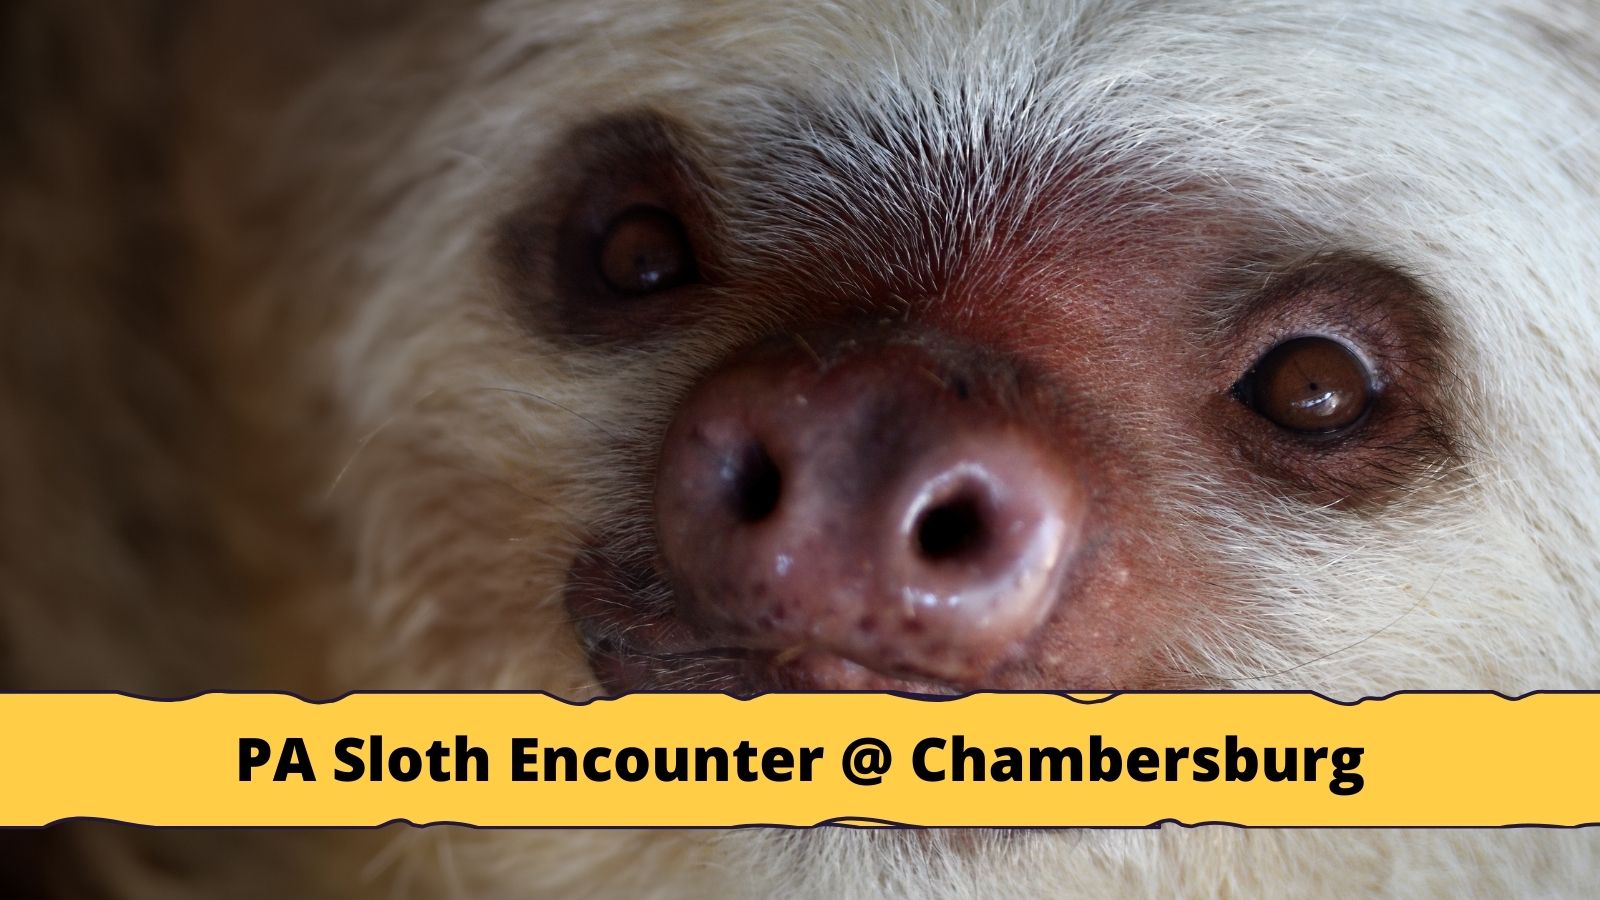 PA Sloth Encounter At The Chambersburg Mall